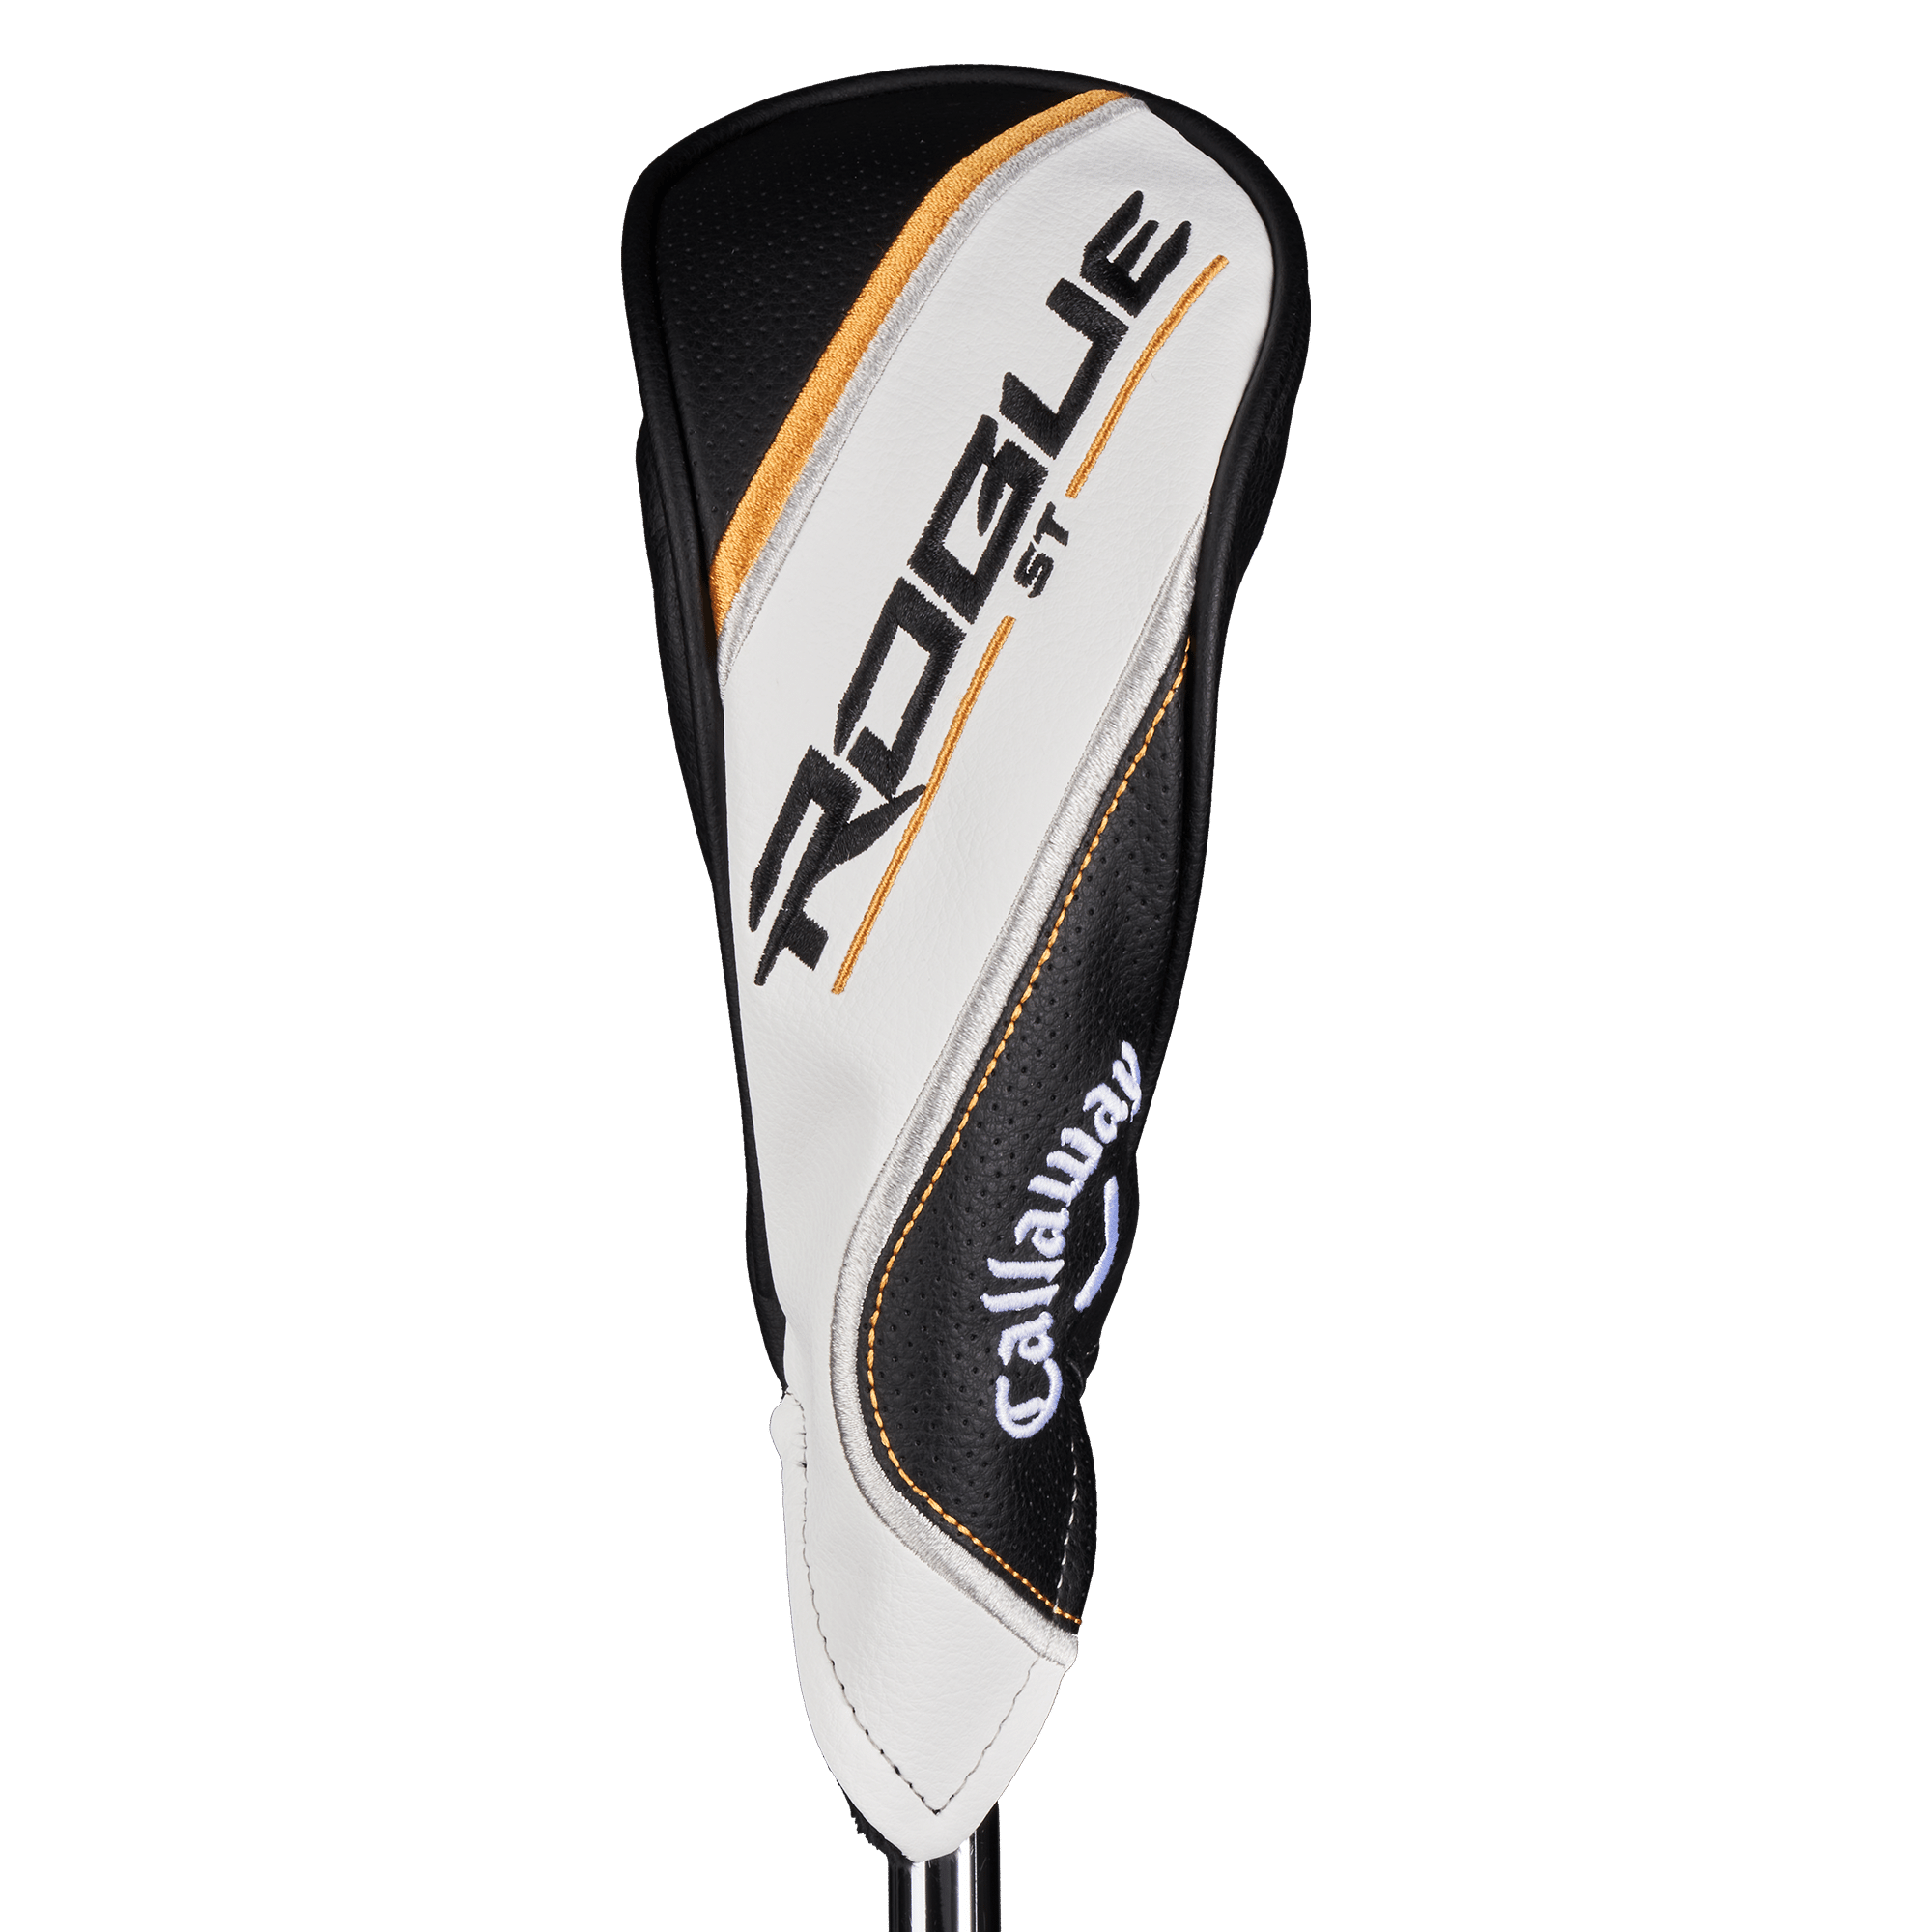 Rogue ST Pro Hybrids | Callaway Golf | Specs